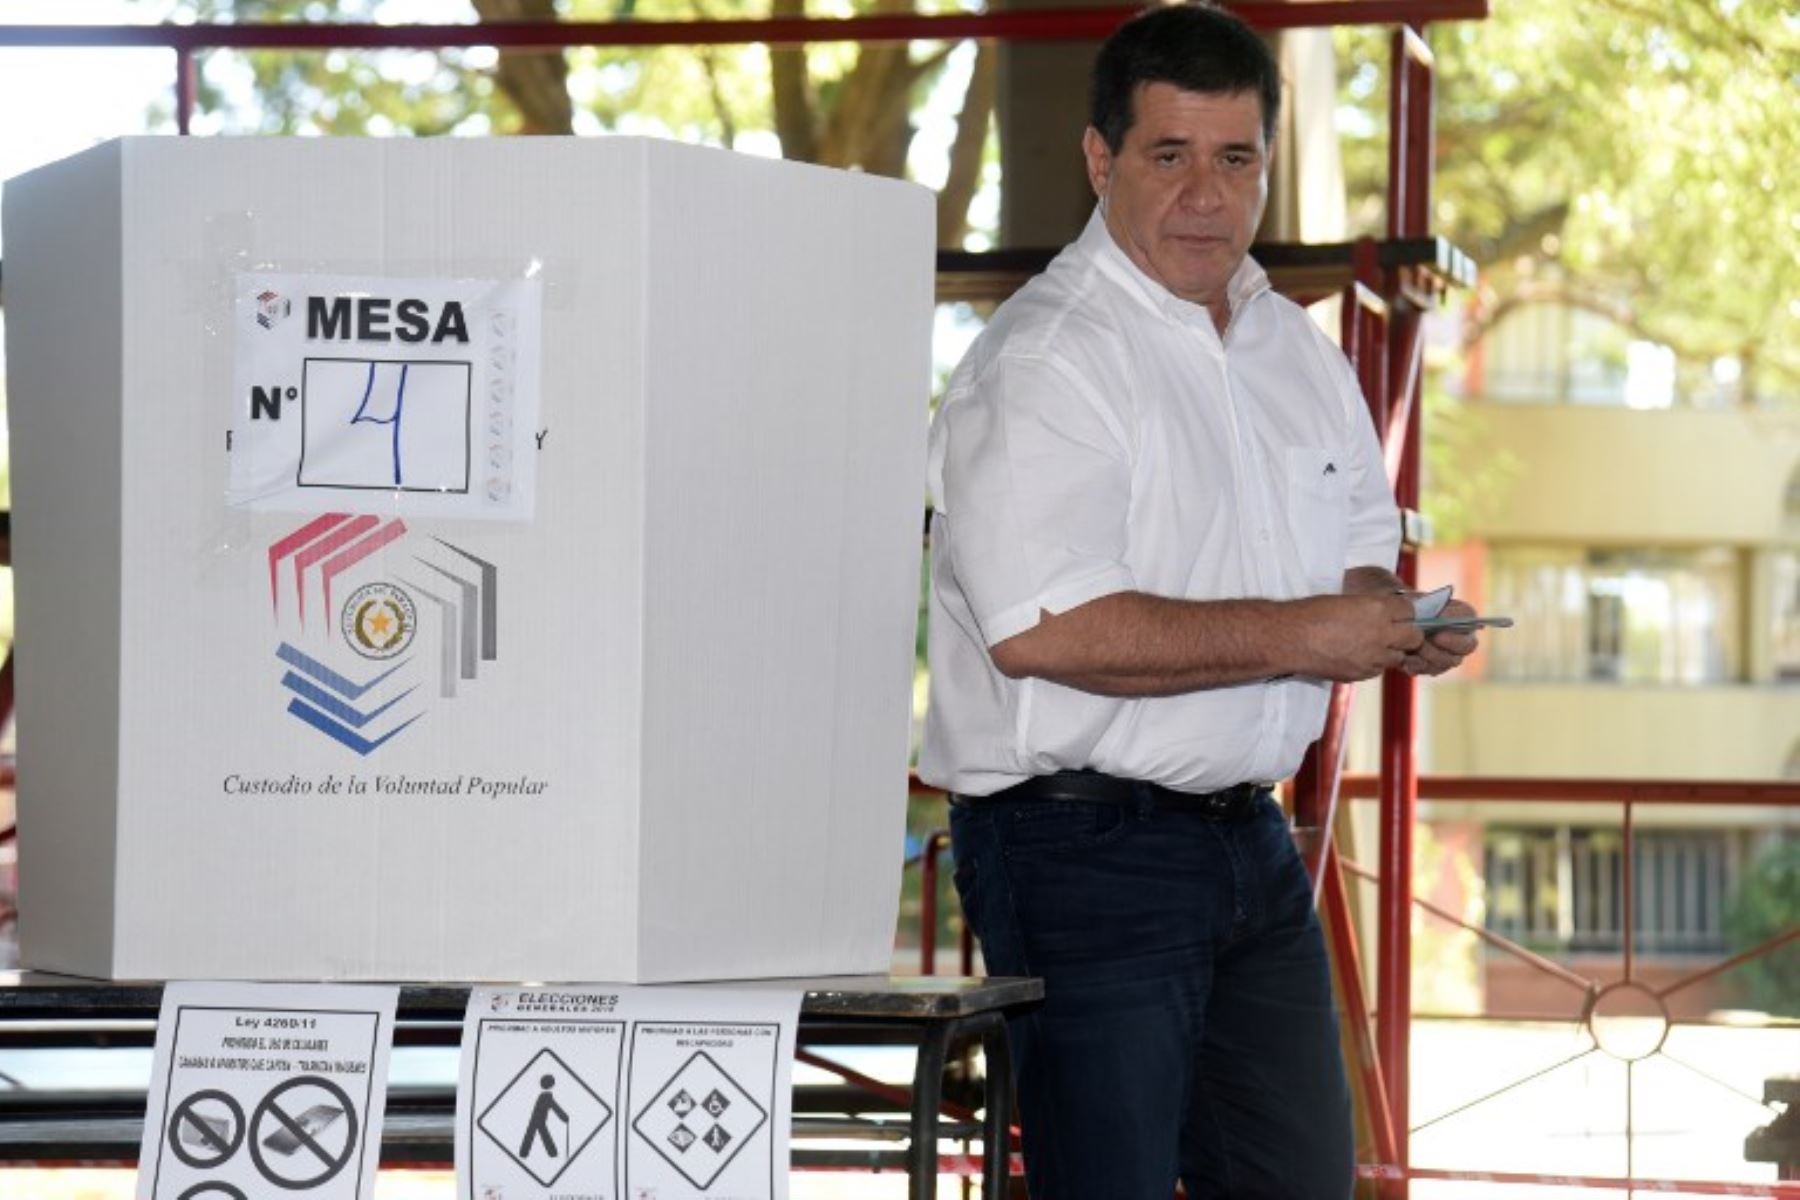 El presidente de Paraguay, Horacio Cartes, vota en una mesa electoral en Asunción, durante las elecciones presidenciales de Paraguay.Foto:AFP